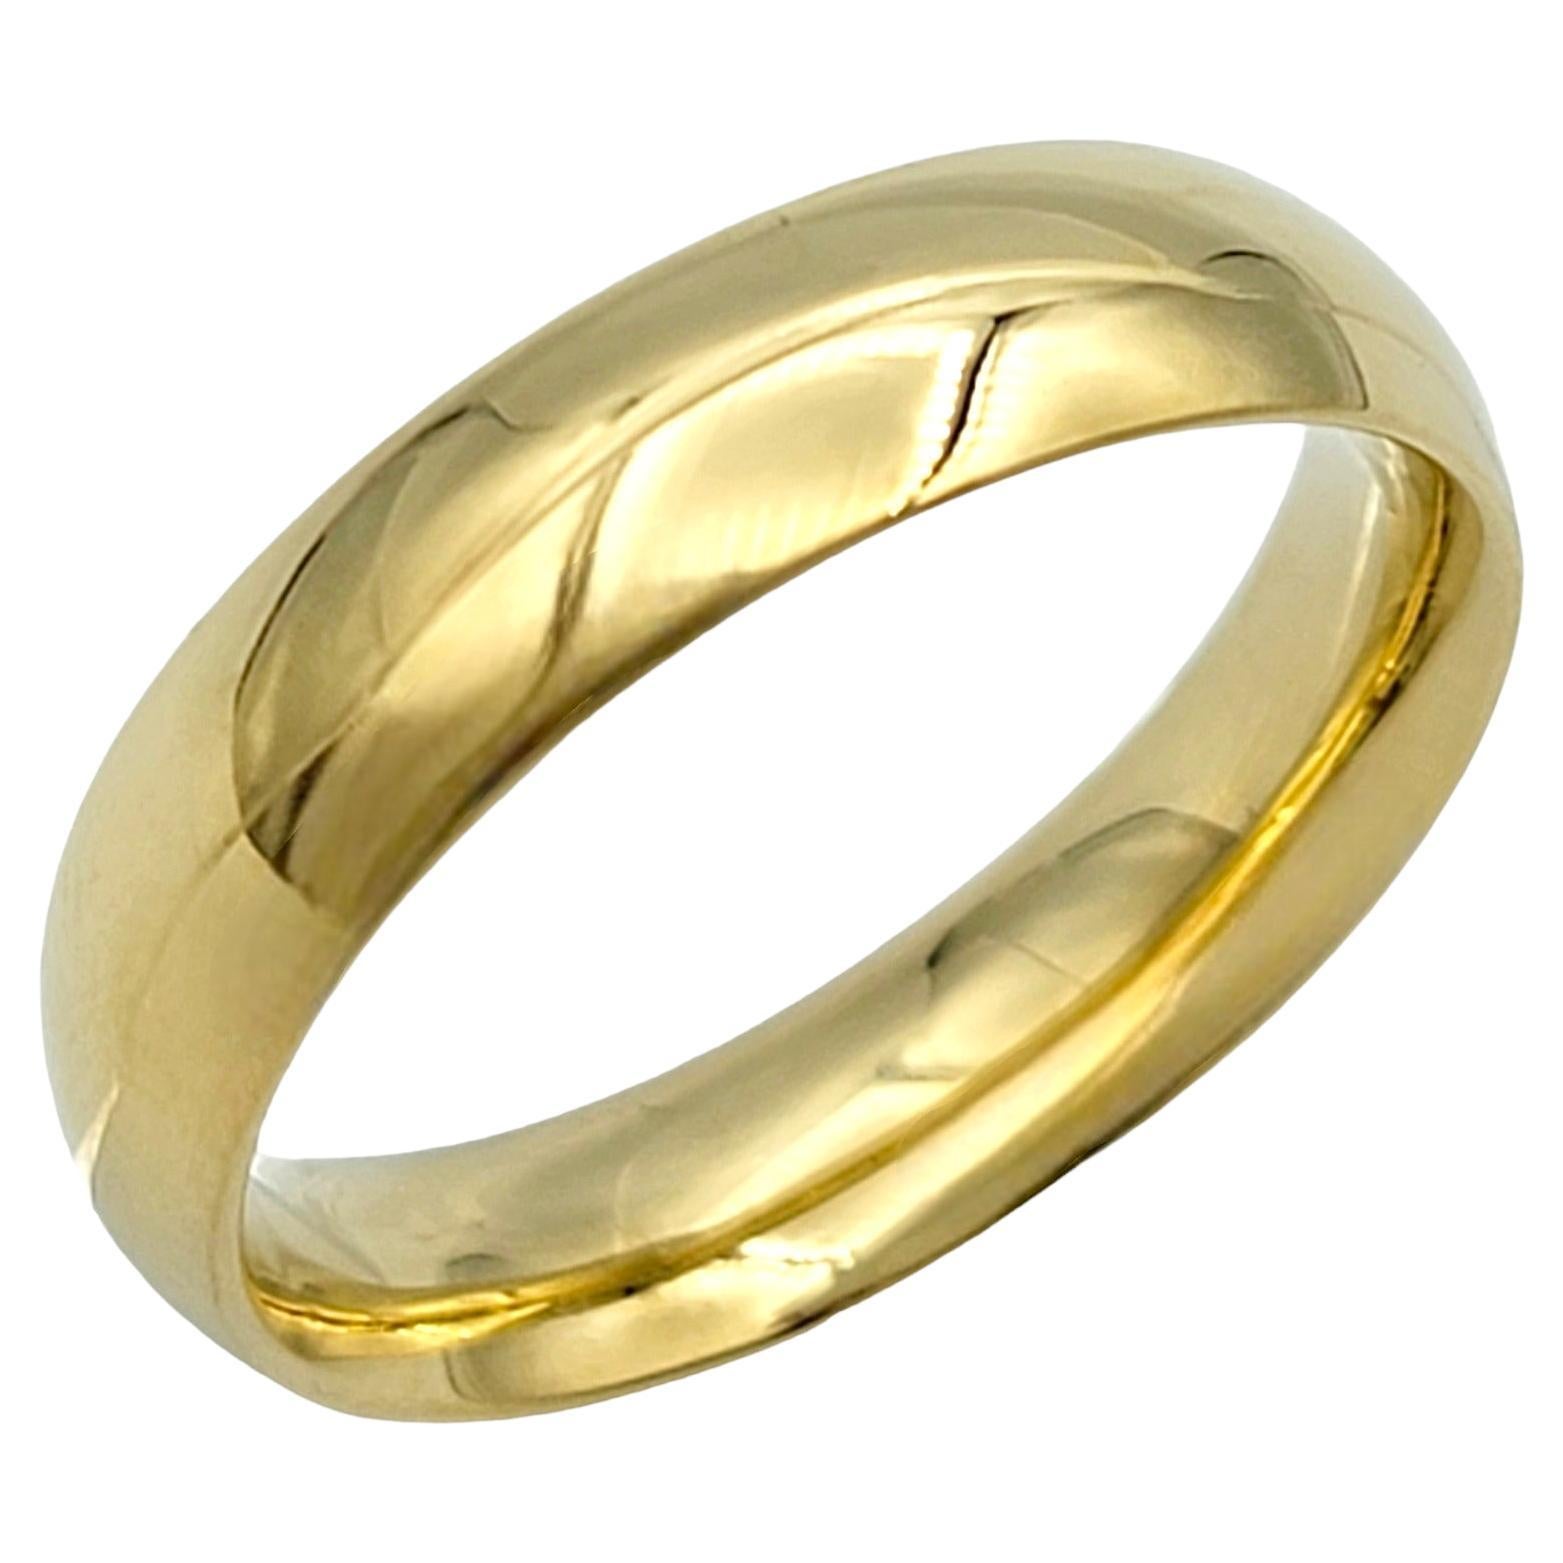 Taille de l'anneau : 8

Cette bague Georg Jensen, en or jaune 18 carats, rayonne d'une élégance intemporelle grâce à sa finition polie. La surface lisse de l'anneau reflète magnifiquement la lumière, ajoutant une touche de luxe à tout ensemble. Son